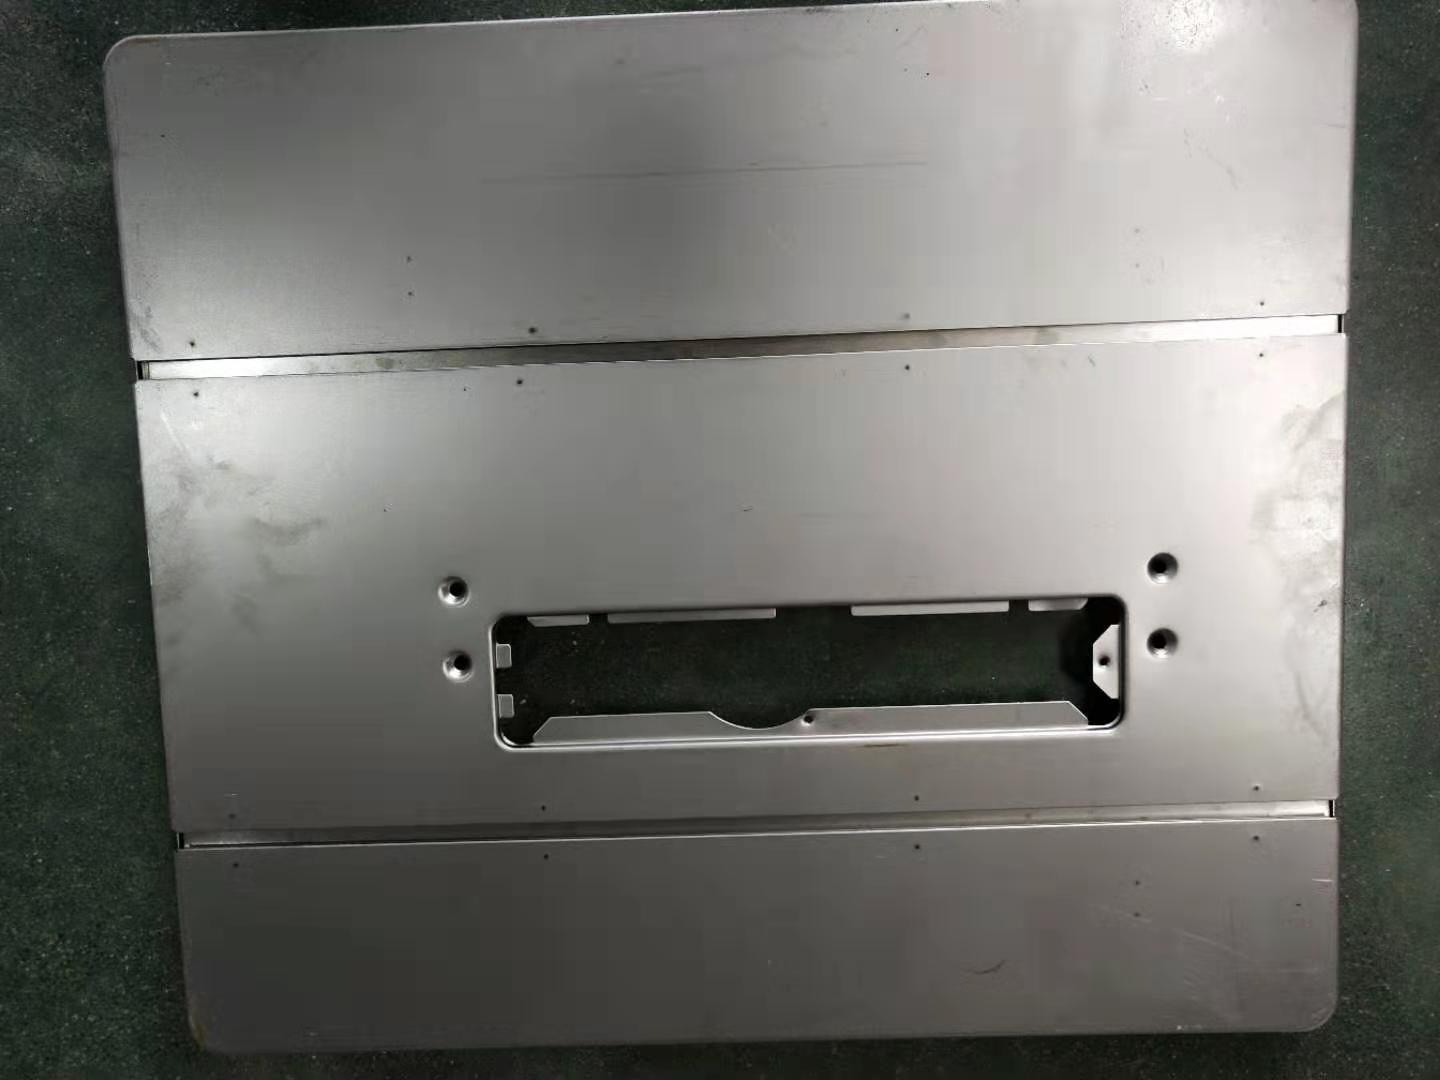 חתוך את החלק האחורי של משטח המכונה לאחר הריתוך